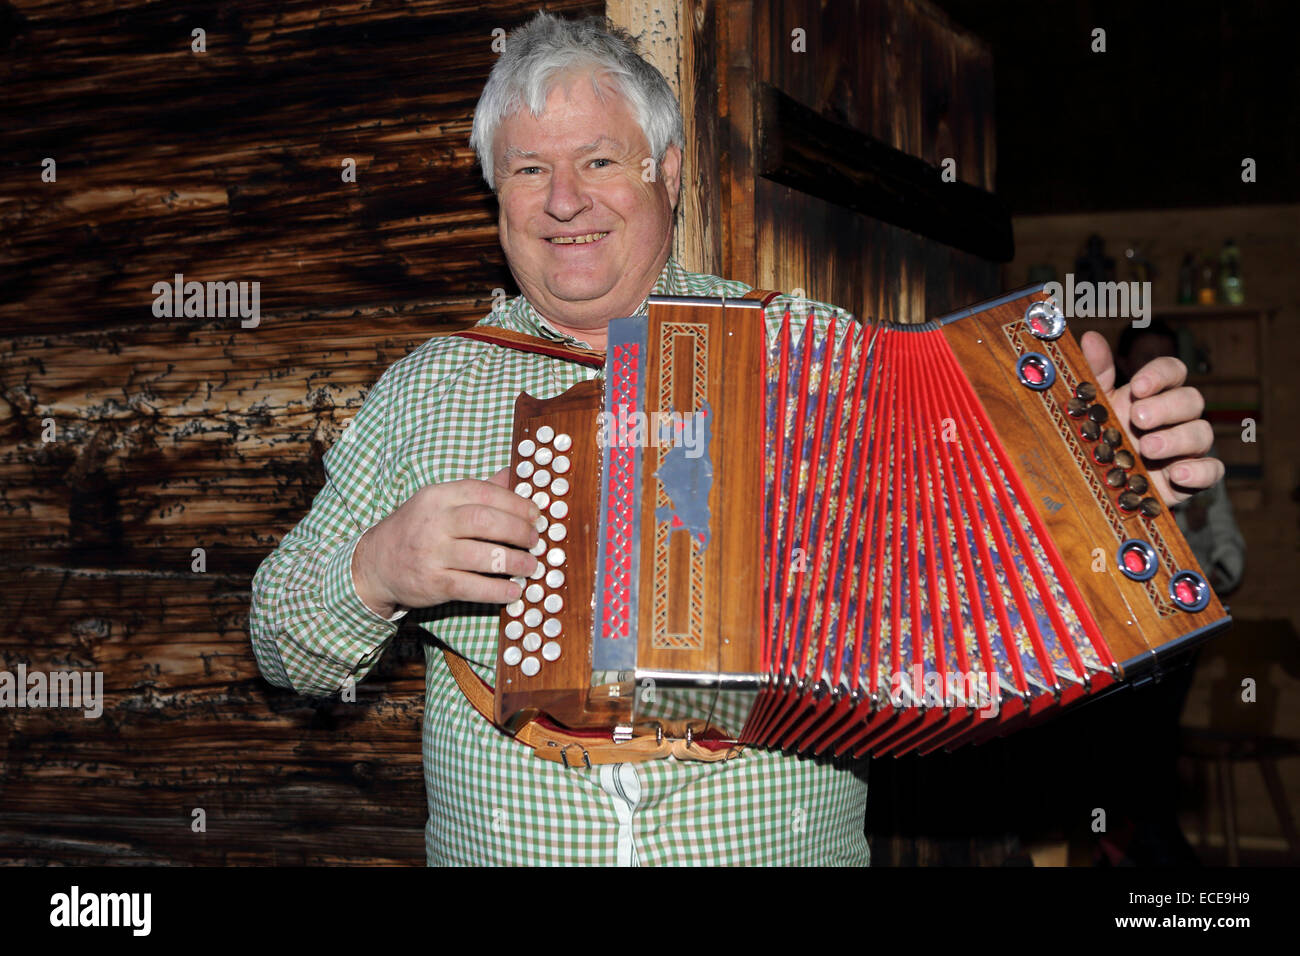 Clemens Walch joue l'accordéon à sa cabane en bois au-dessus de Lech, Autriche. L'accordéon est utilisé traditionnellement en Alpine Music. Banque D'Images